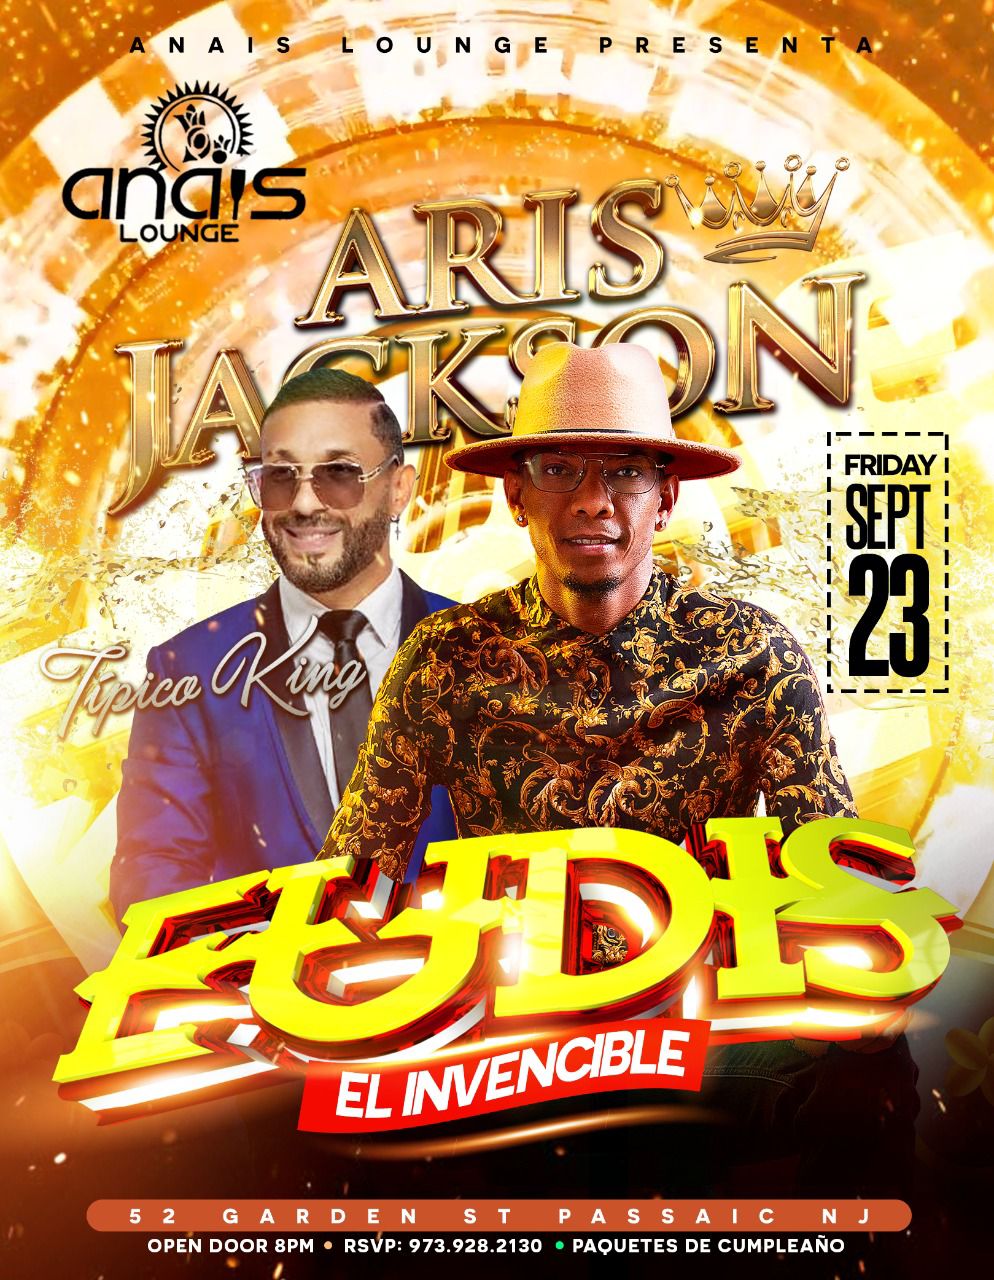 Eudis El Invencible & Aris Jackson